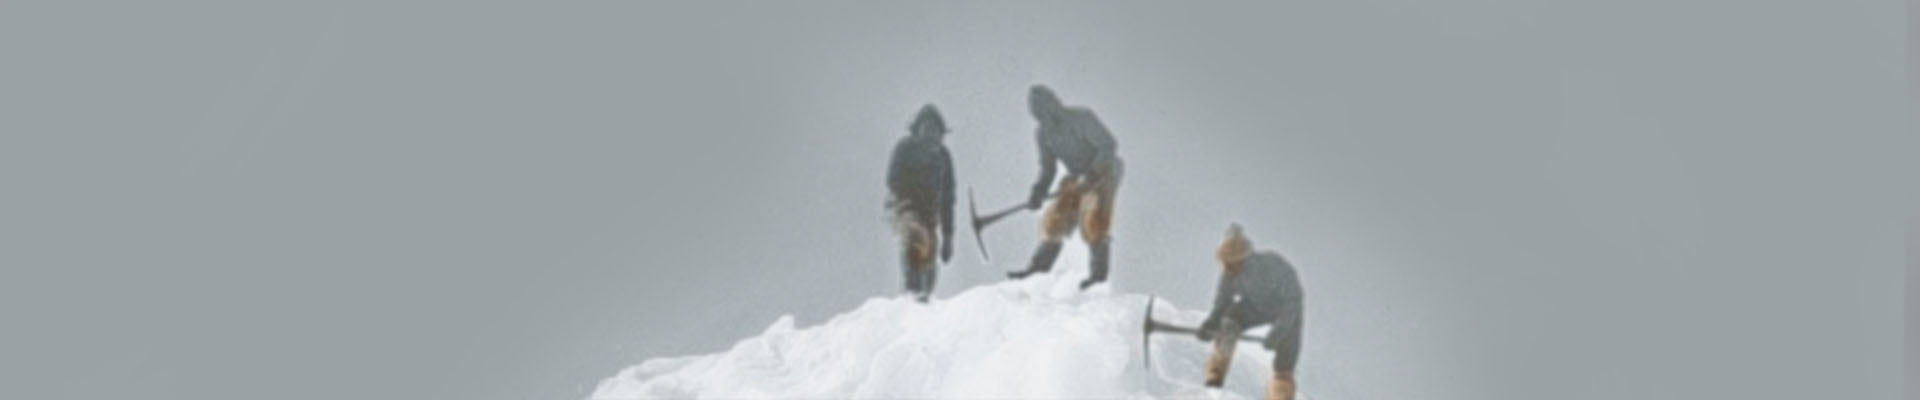 Team on narrow icefoot